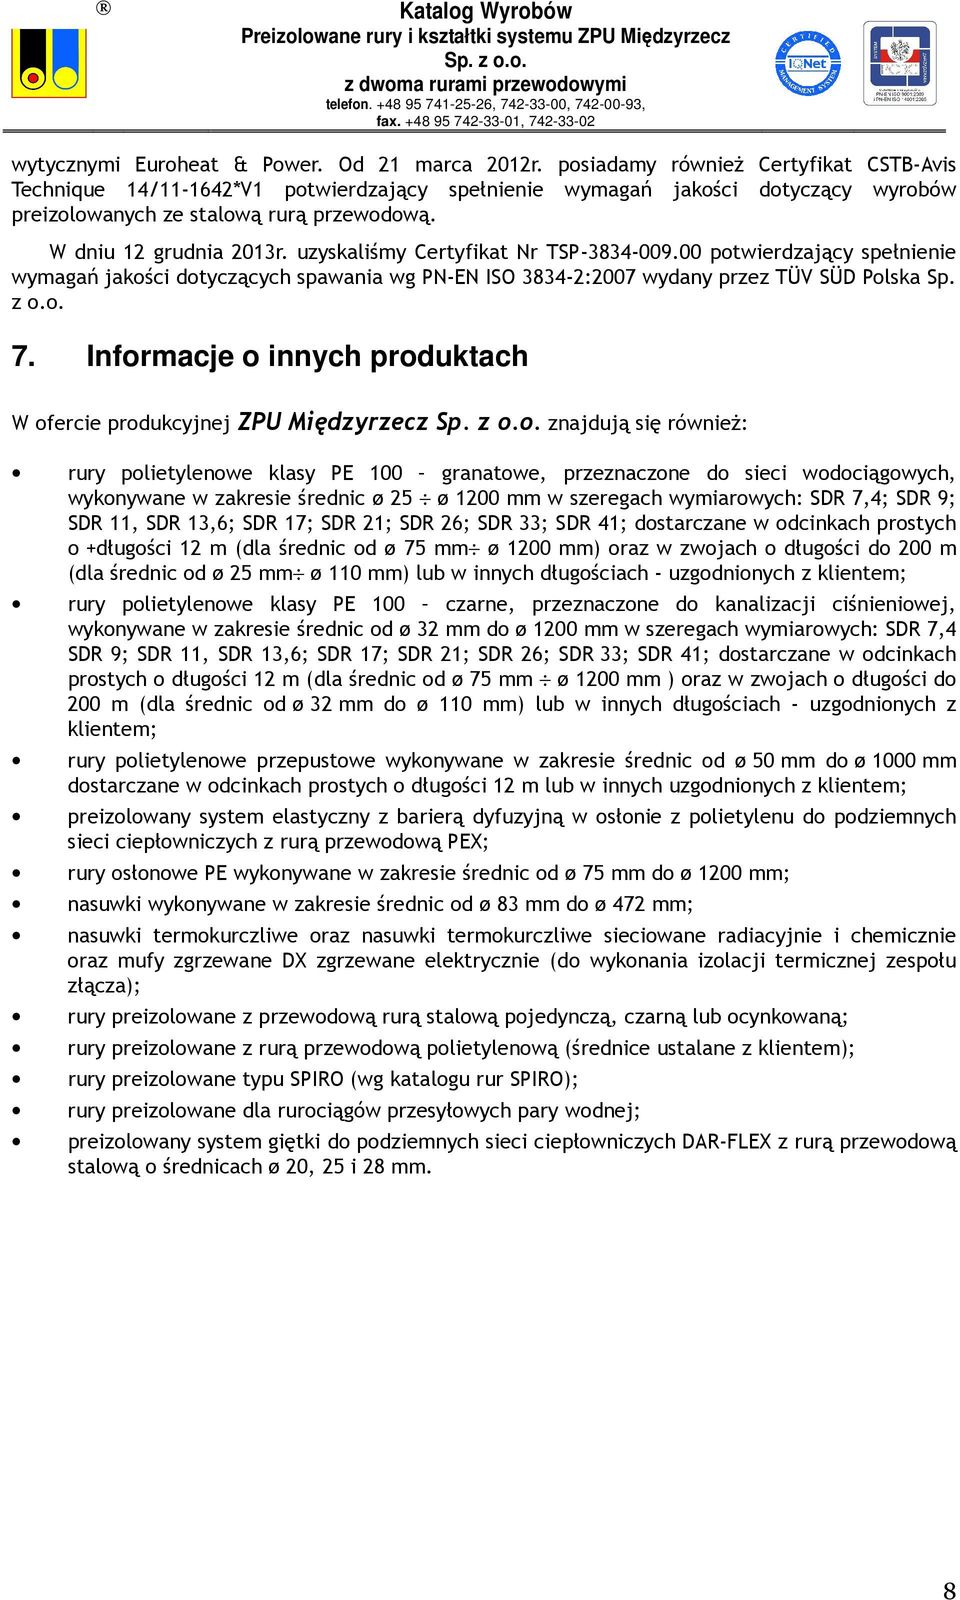 uzyskaliśmy Certyfikat Nr TSP-3834-009.00 potwierdzający spełnienie wymagań jakości dotyczących spawania wg PN-EN ISO 3834-2:2007 wydany przez TÜV SÜD Polska Sp. z o.o. 7.